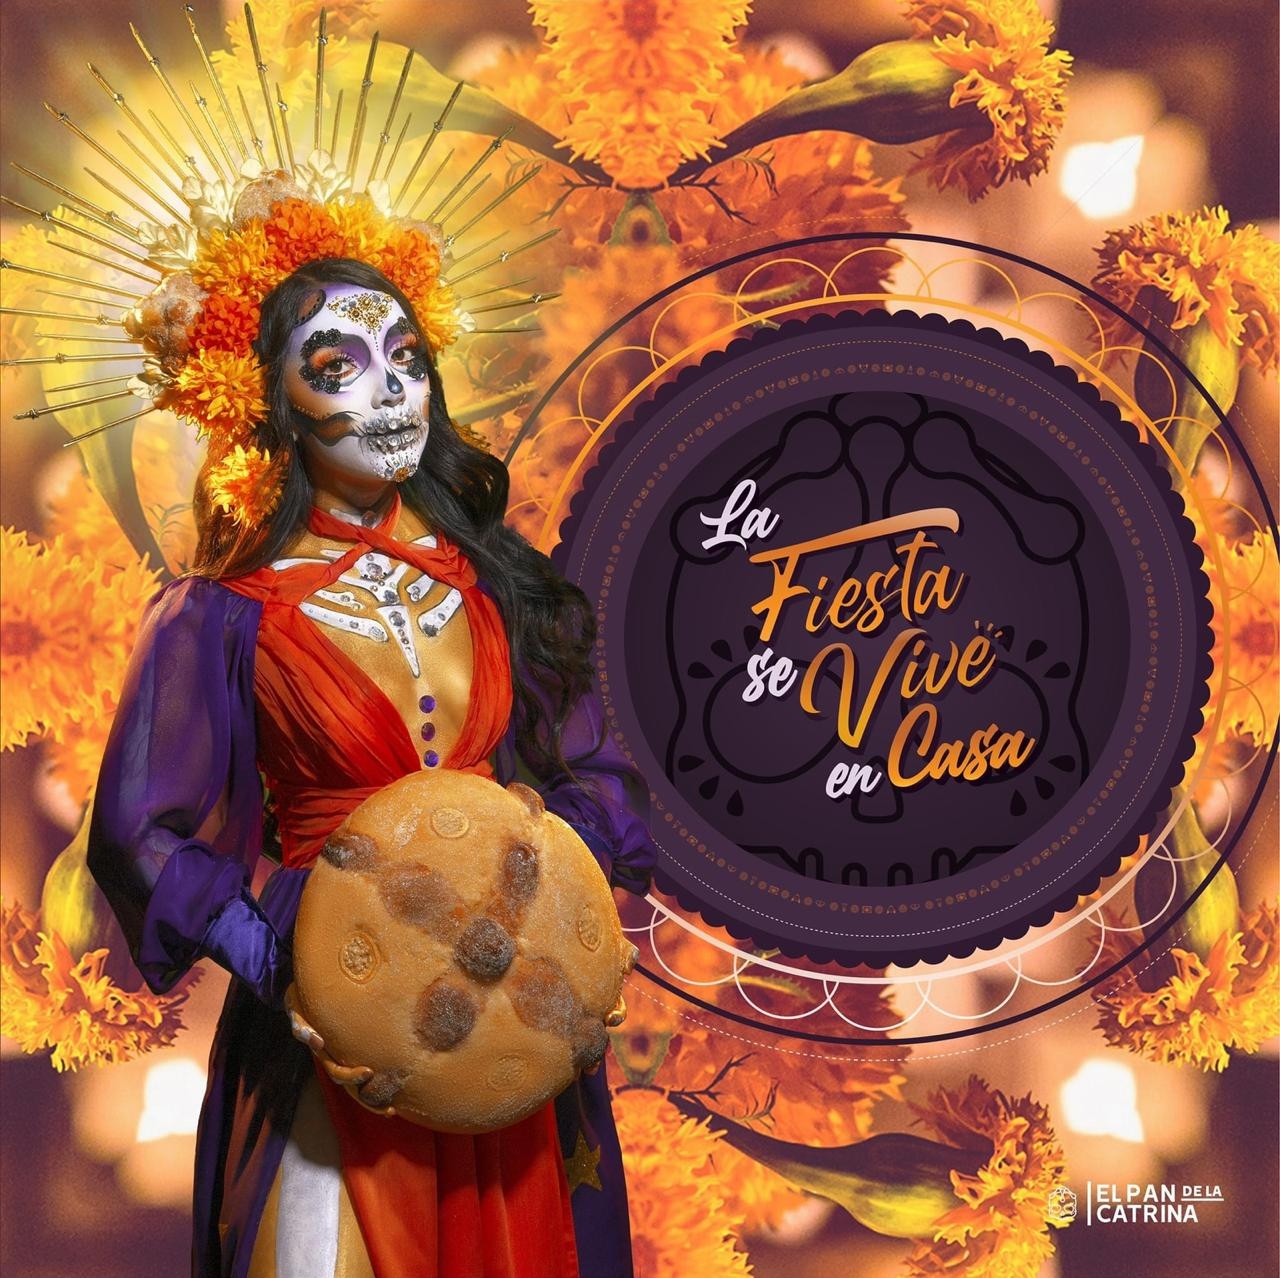 El Pan de la Catrina, Fiestas de la calle - Escapadas por México Desconocido